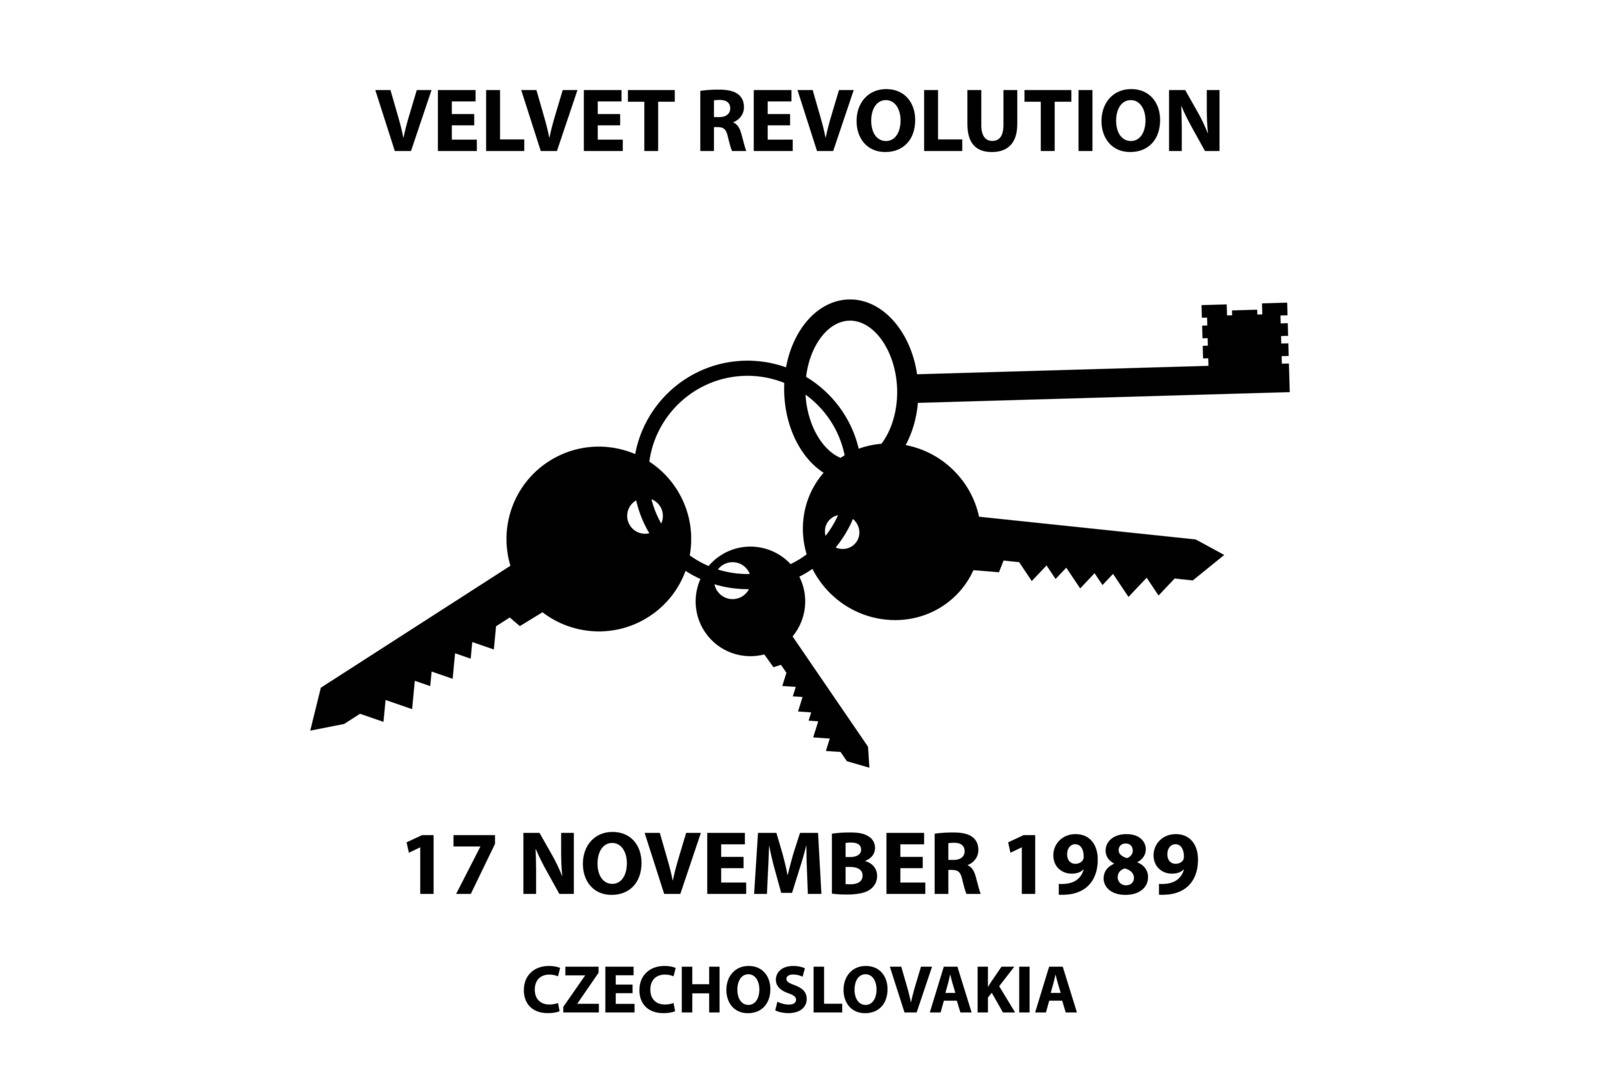 Clinking keys - velvet revolution symbol by Danler